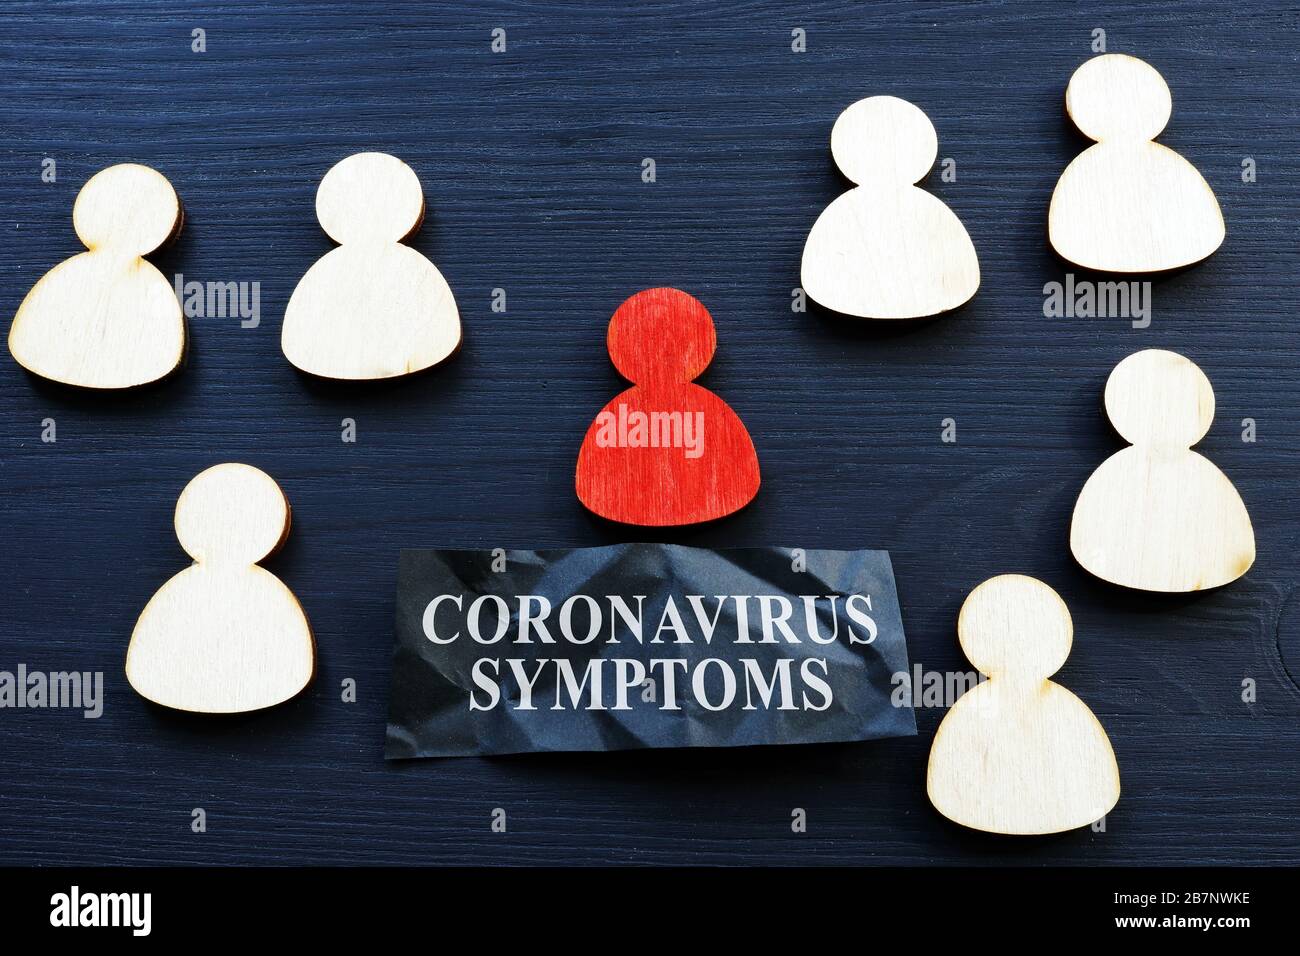 Coronavirus symptoms concept. Symbol of ill by covid 19 figure. Stock Photo